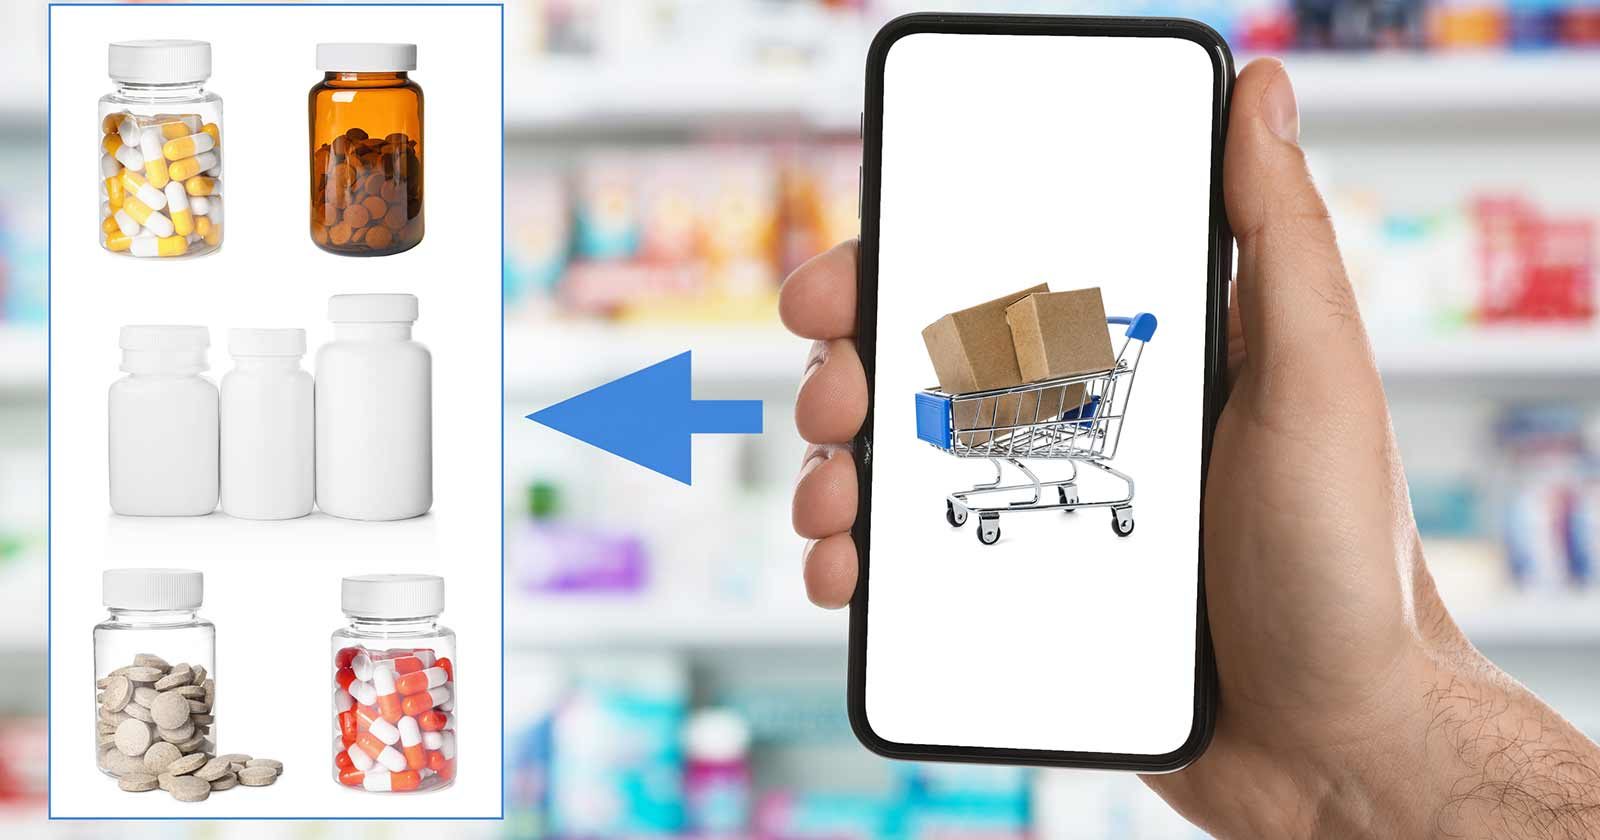 ordering prescriptions online just got safer